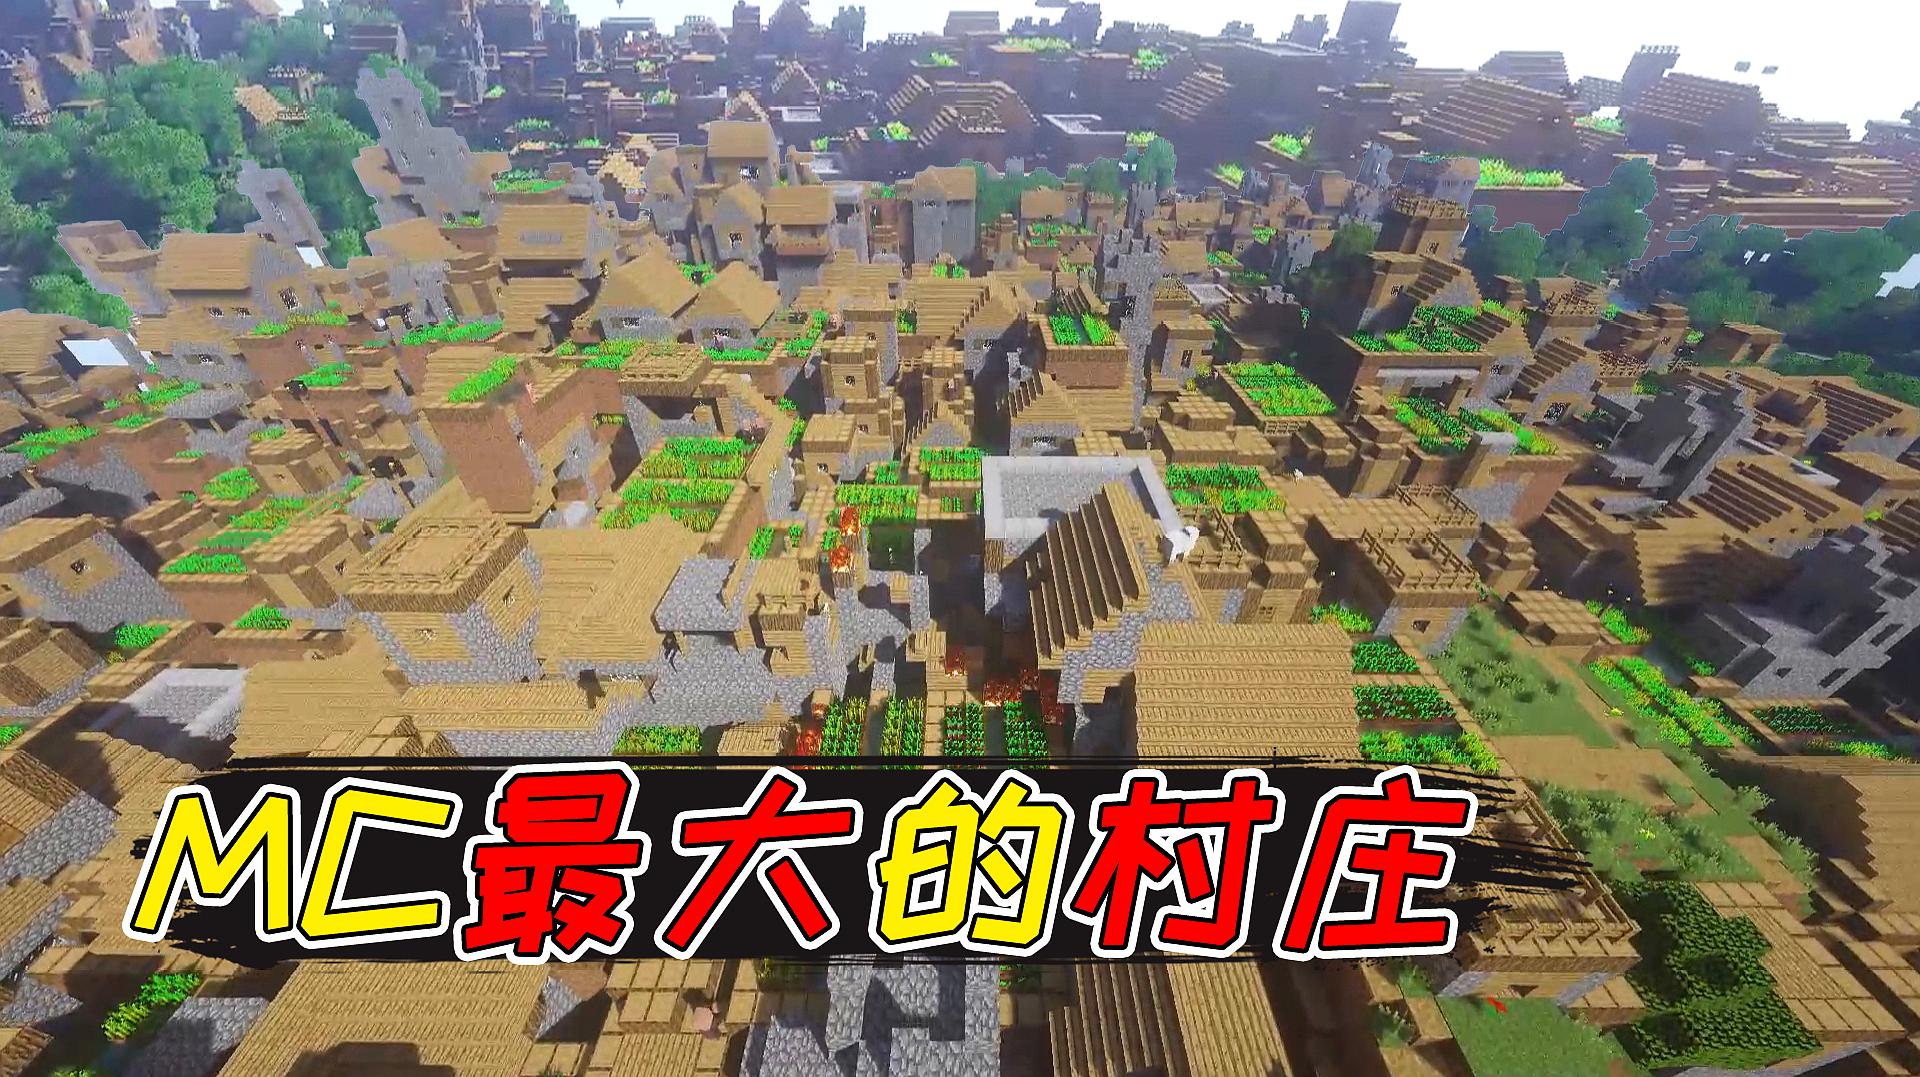 我的世界:mc最大的村庄!将几万个村庄堆在一起会怎样?